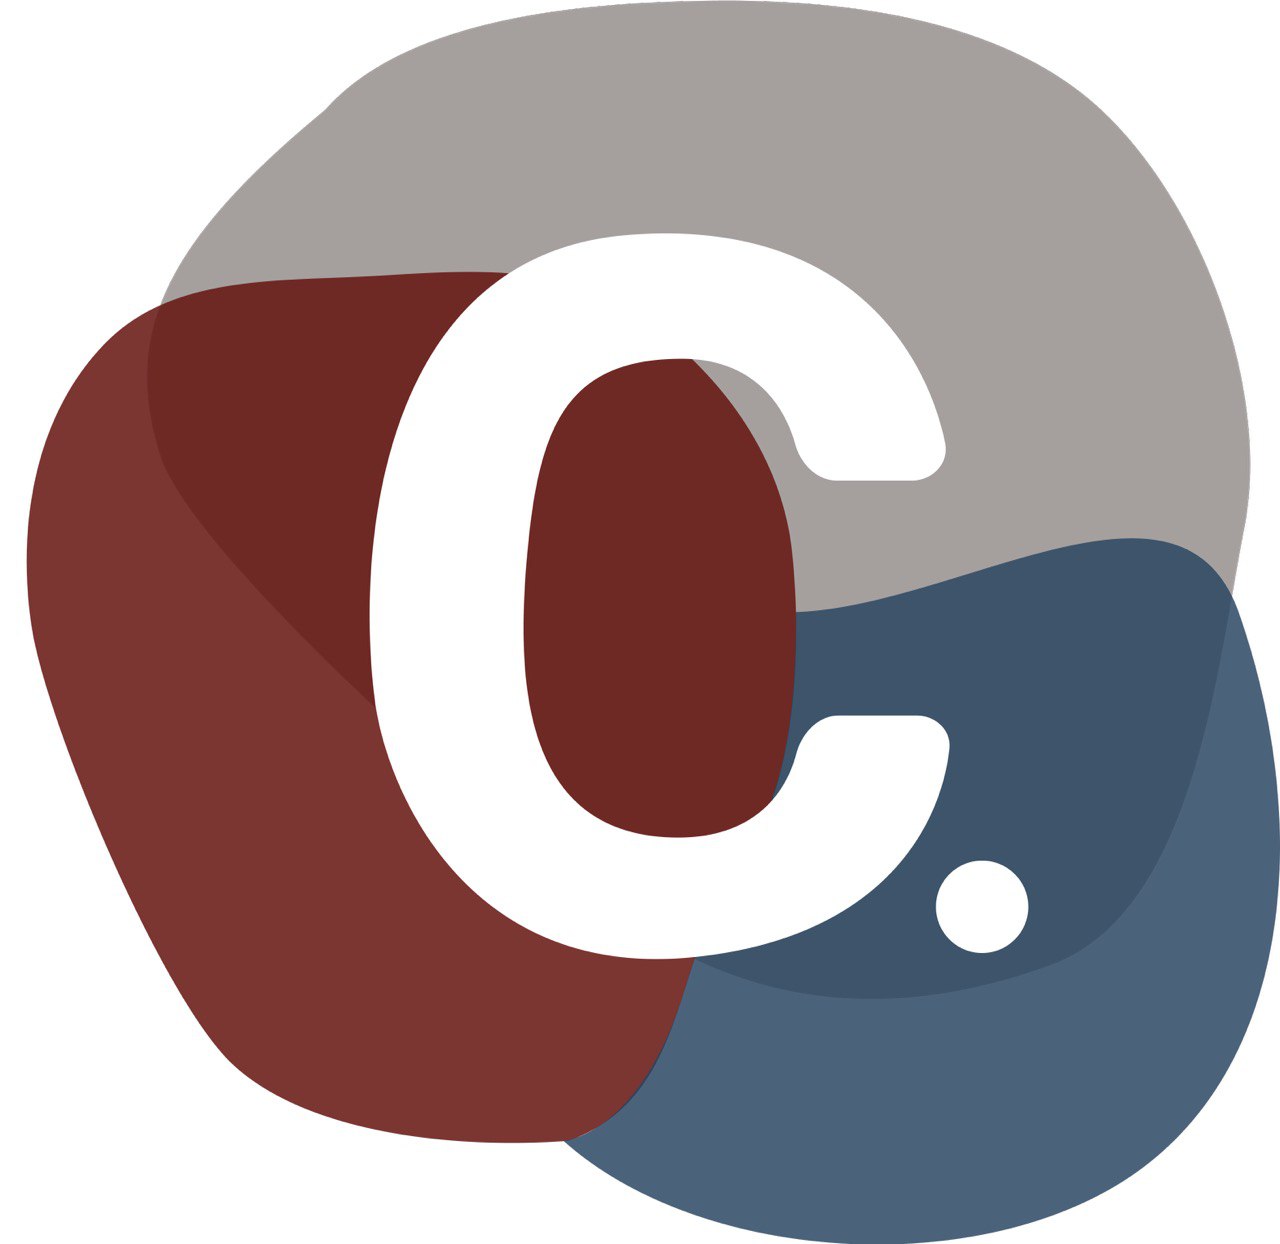 The Collective logo